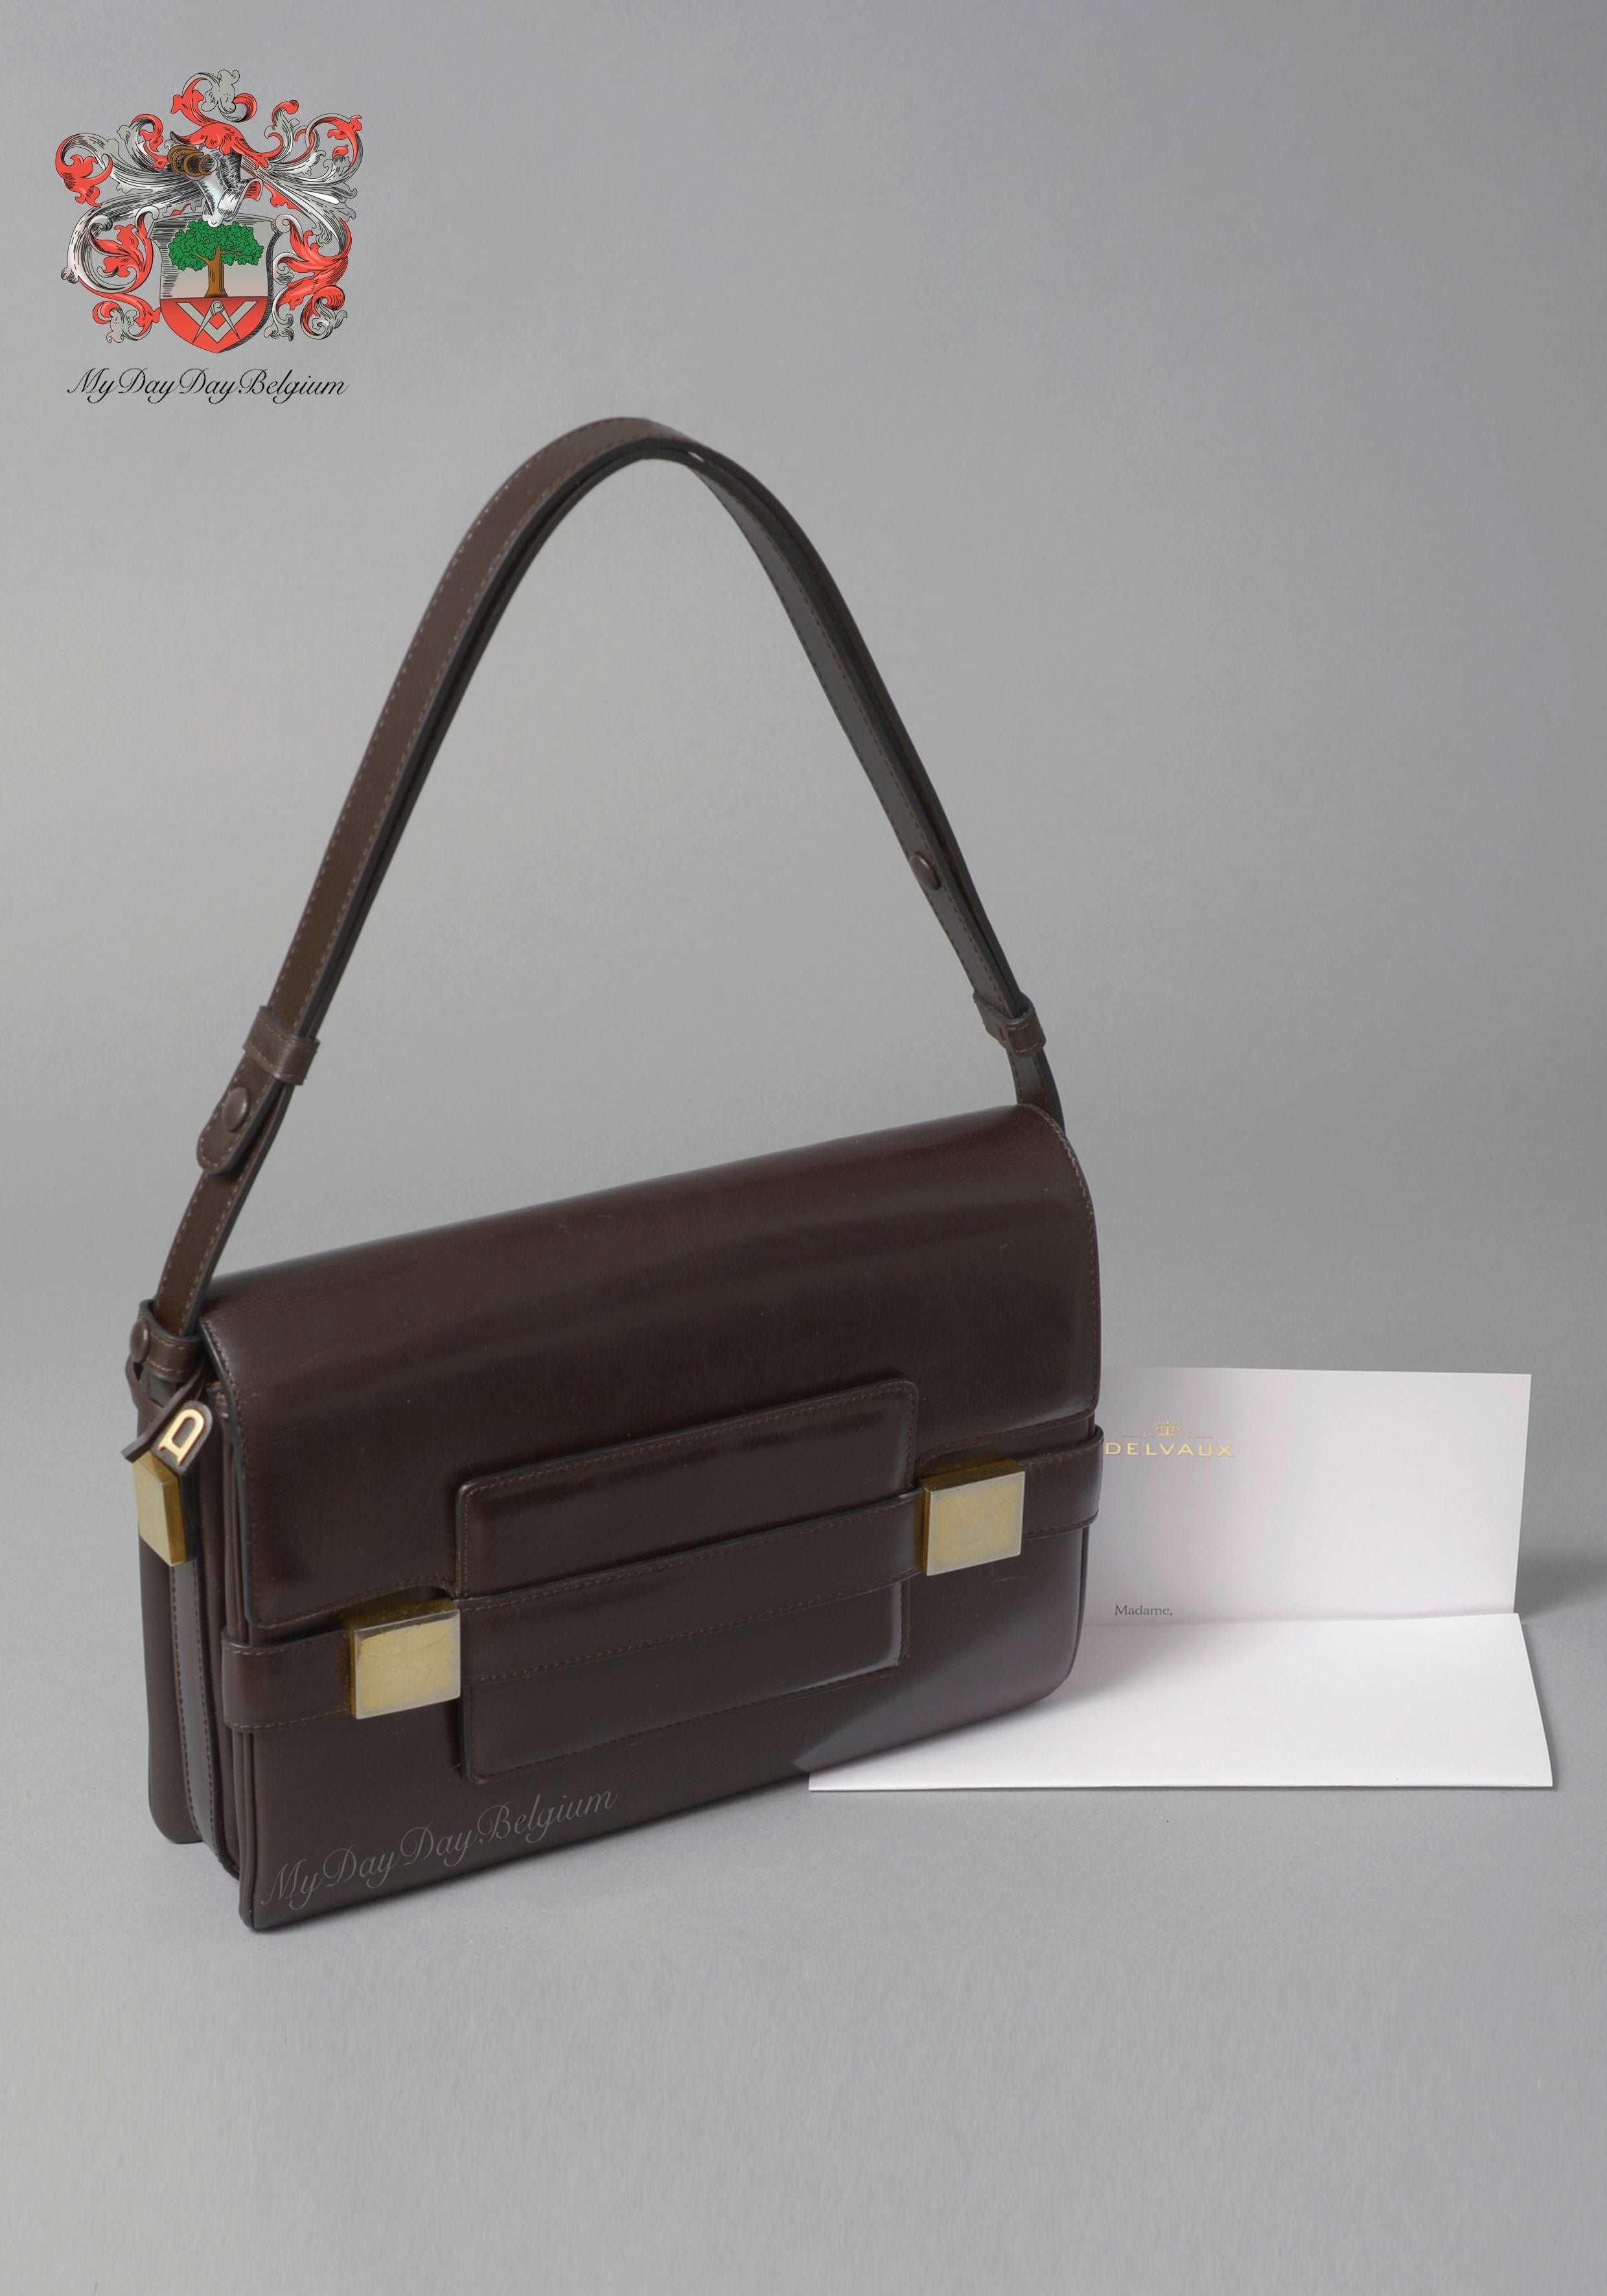 Delvaux Shoulder Bag 1977, Delvaux Handbags